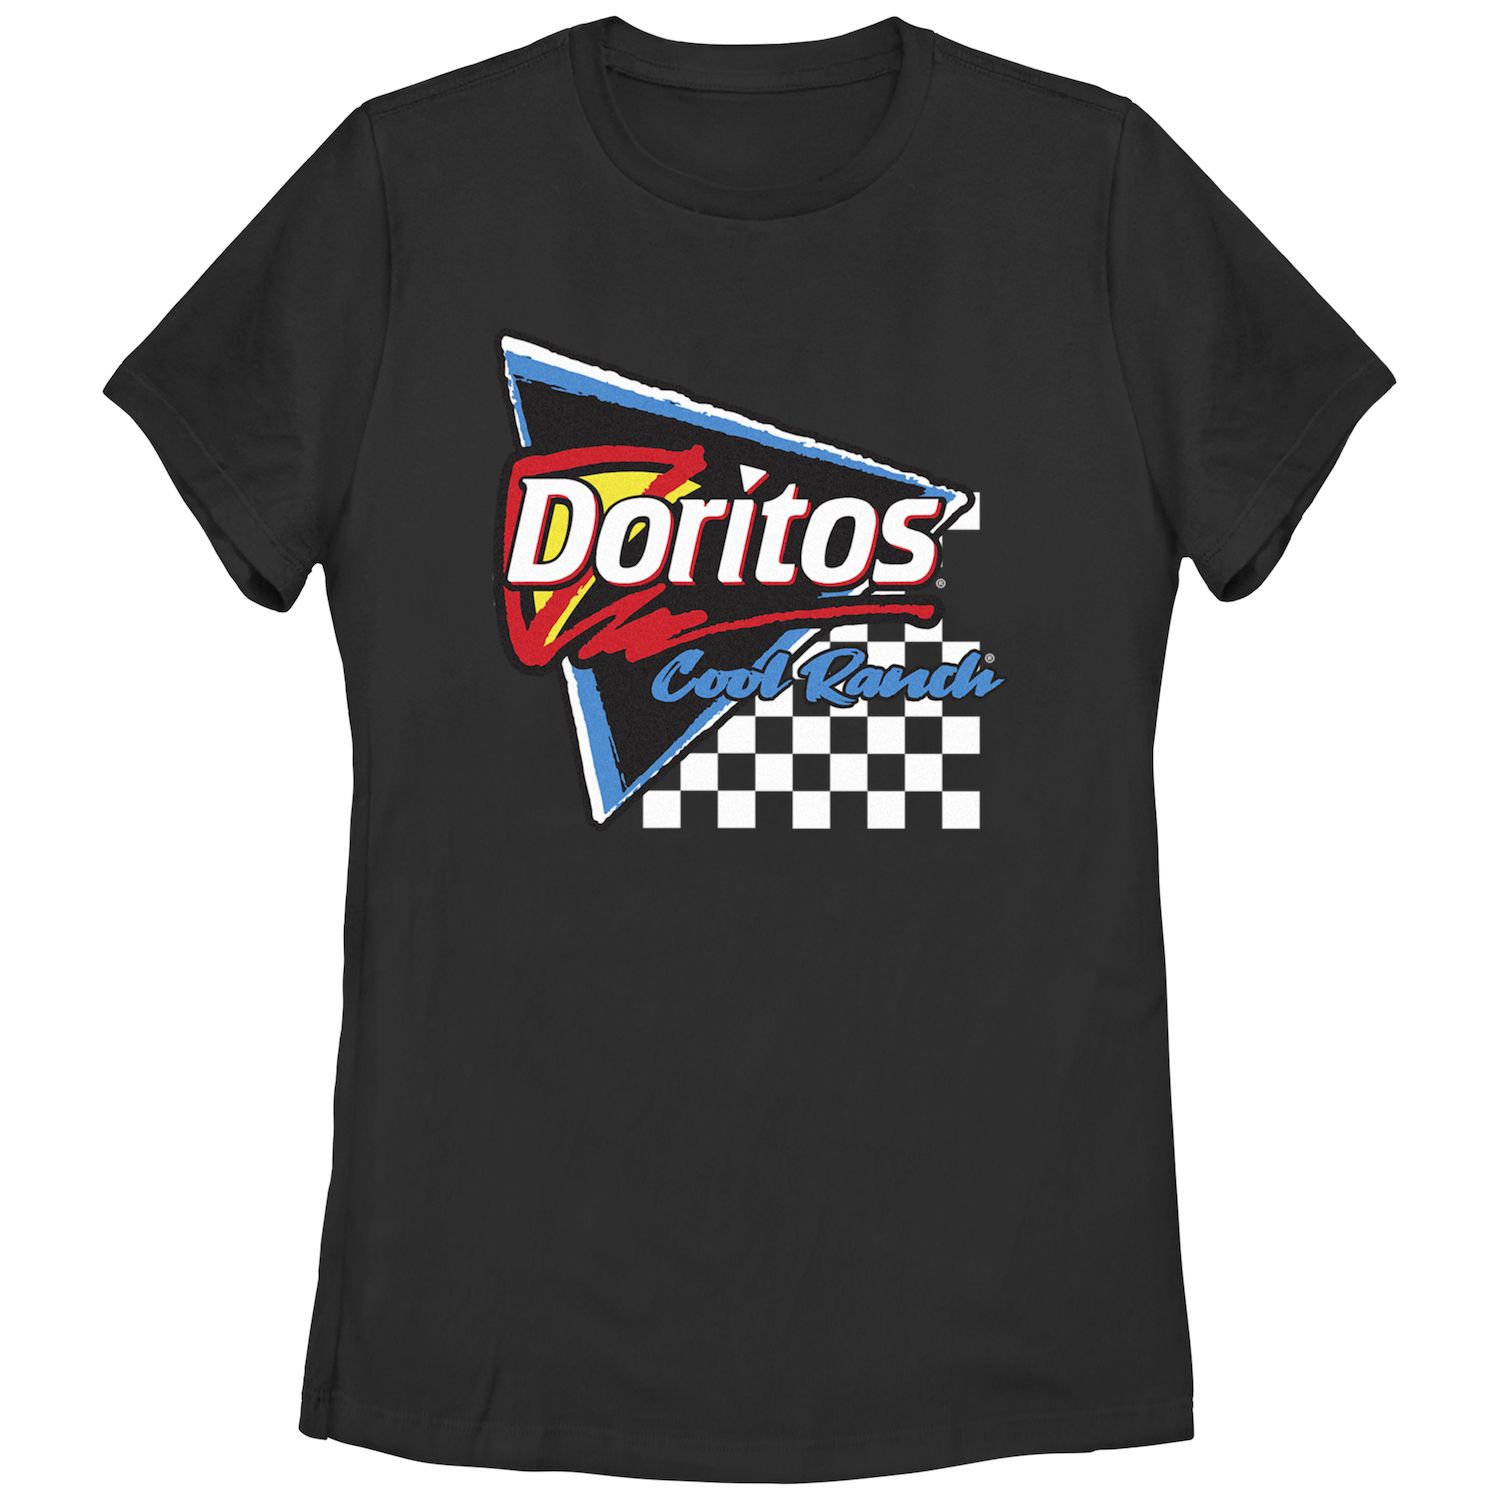 Детская футболка Doritos Cool Ranch Racing с треугольным рисунком и флагом Doritos